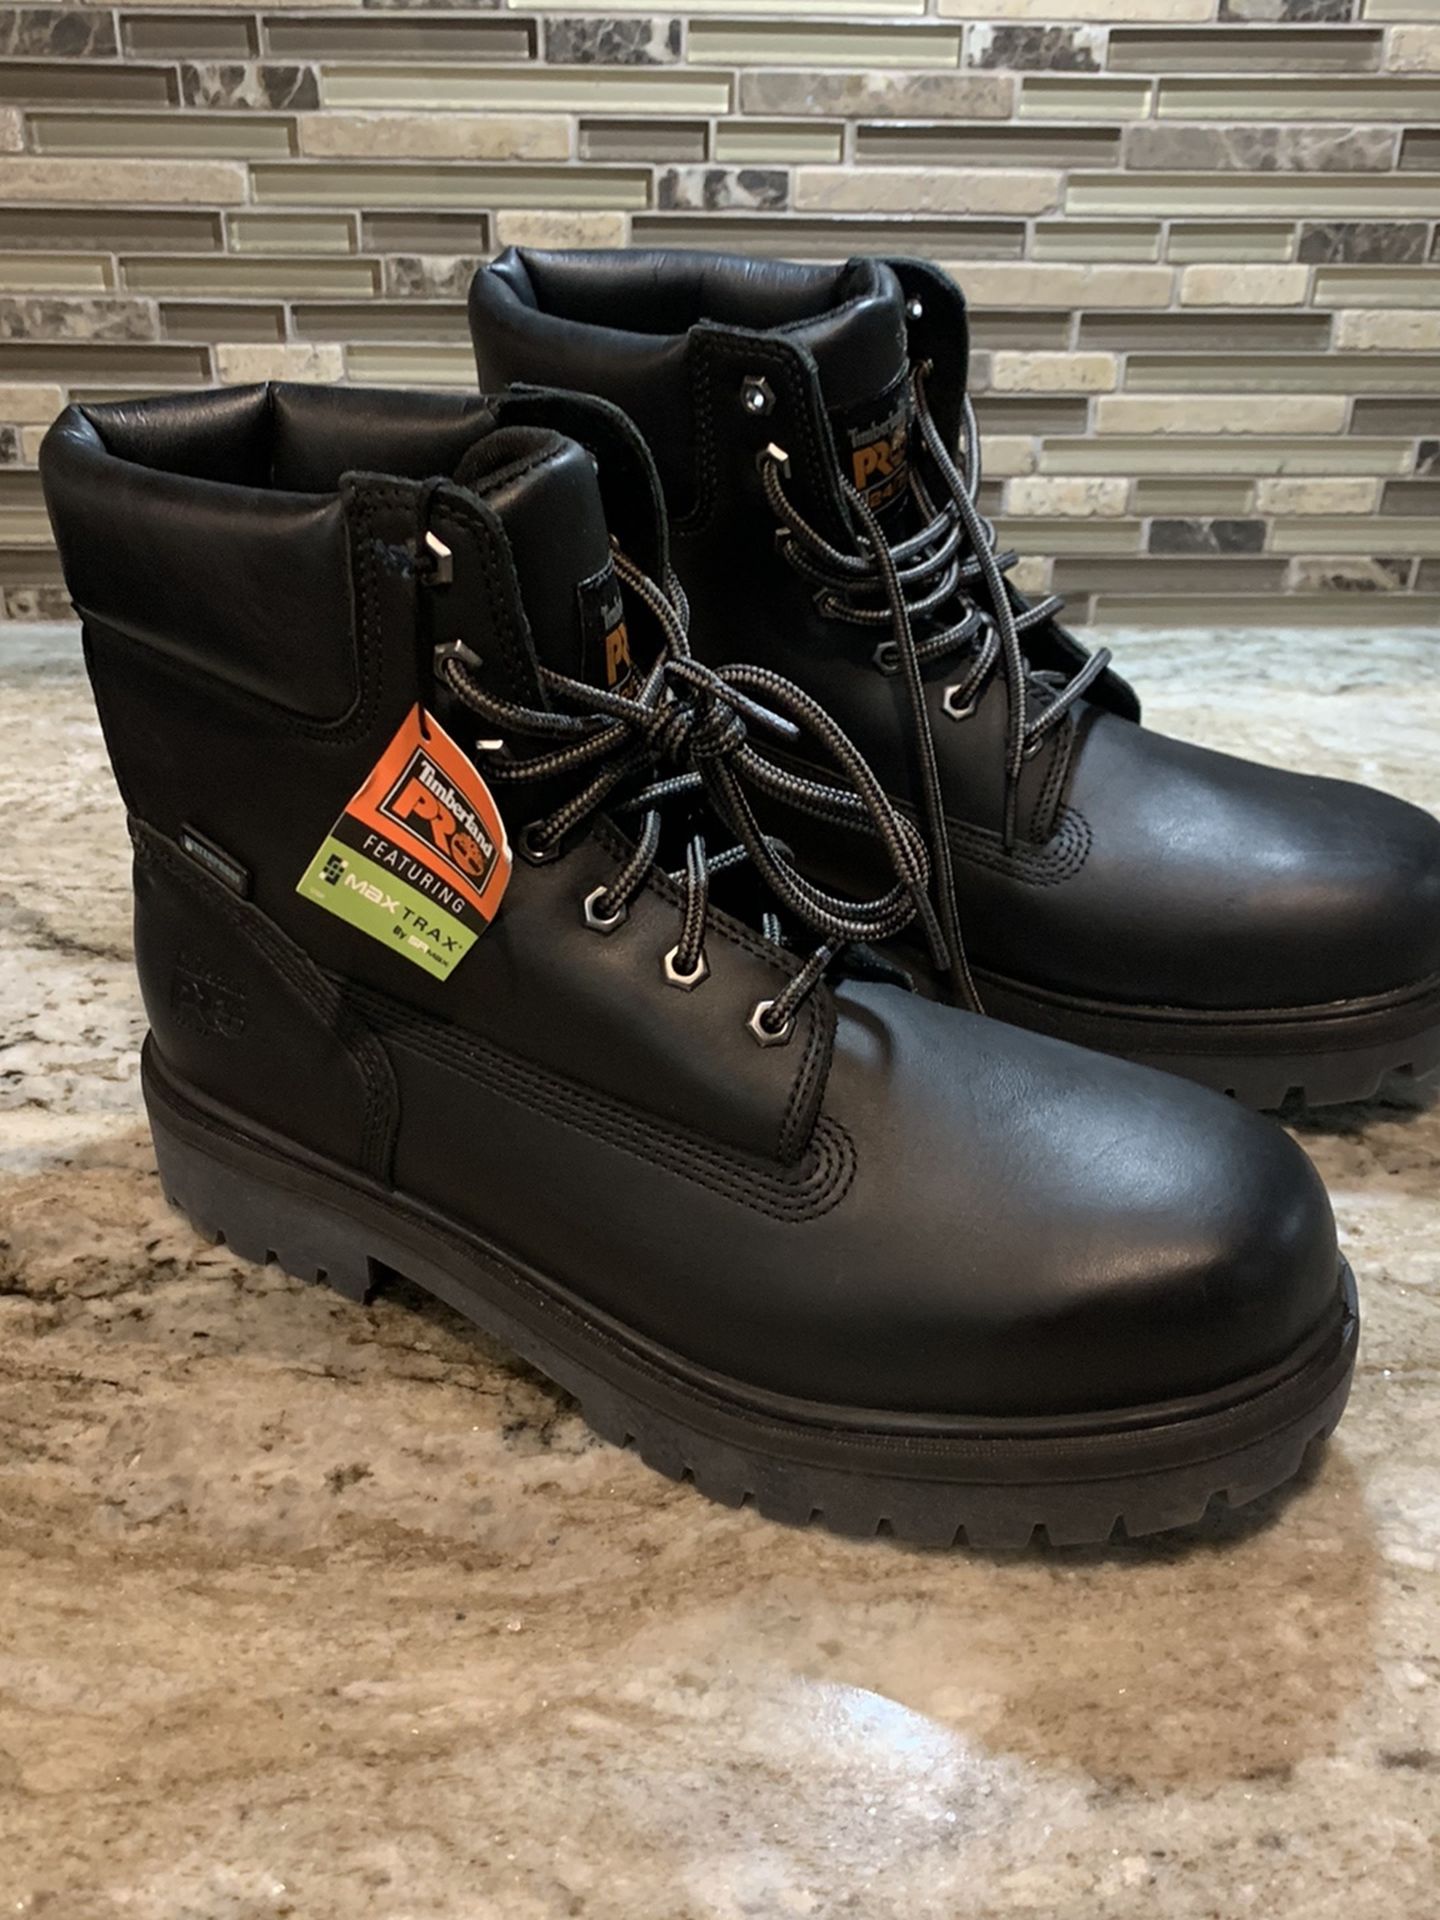 Timberland Pro Direct Soft Toe Work Boot Waterproof